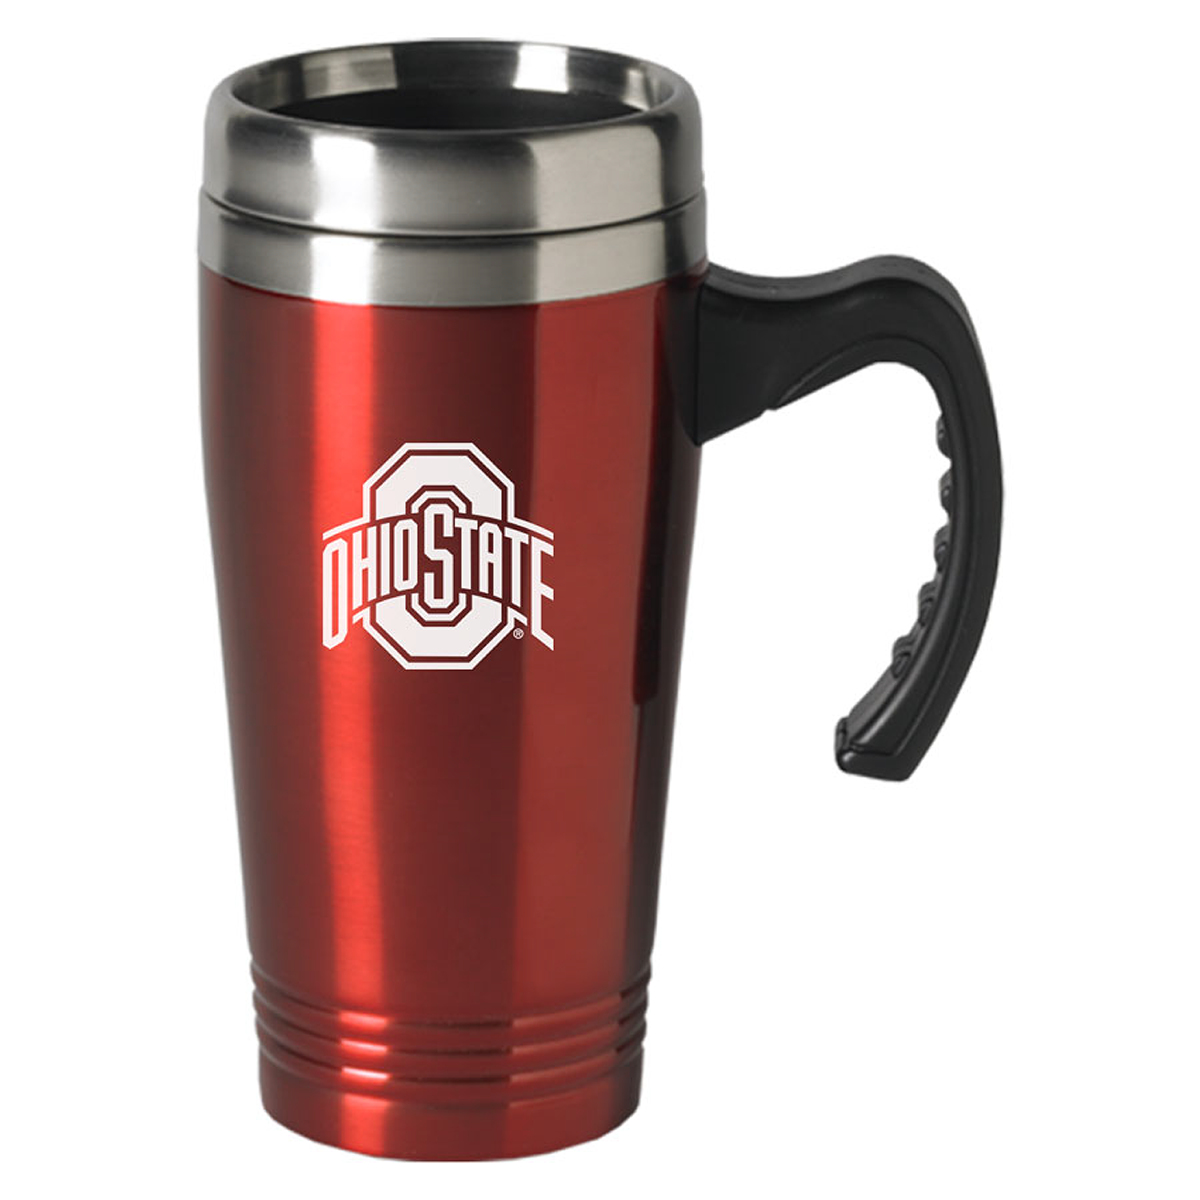 Ohio State University 16oz. Travel Mug